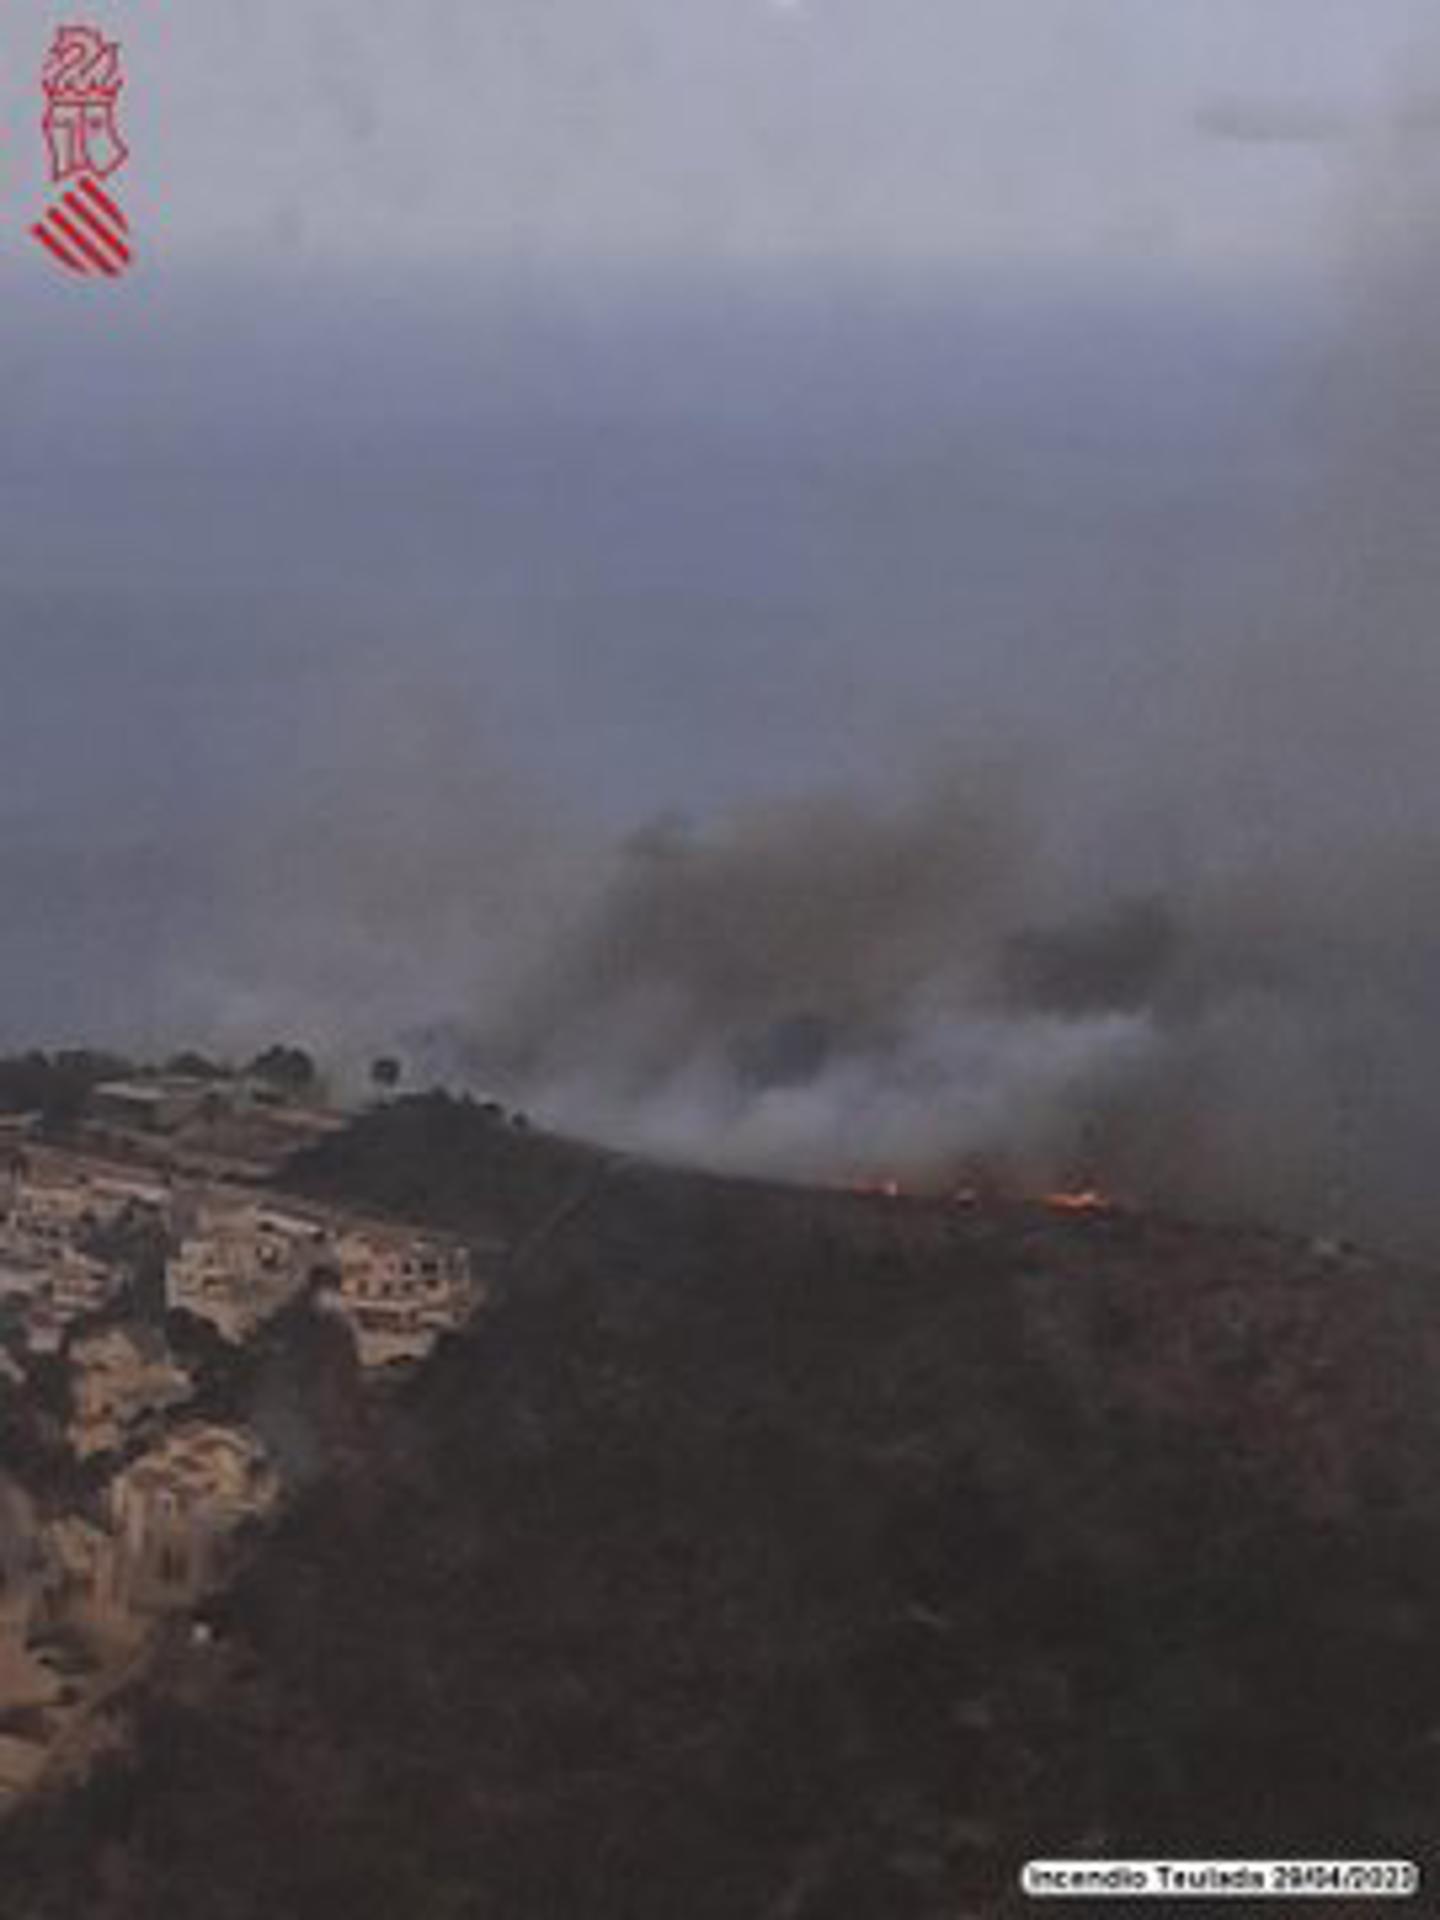 El incendio declarado este sábado en la cala Llebeig de Teulada, en Alicante, donde el humo llevó al desalojo de 120 vecinos, ha quedado estabilizado tras afectar a unas 18 hectáreas, según las primeras estimaciones. Imagen del incendio en la tarde del ayer sábado. EFE/Emergencias Generalitat